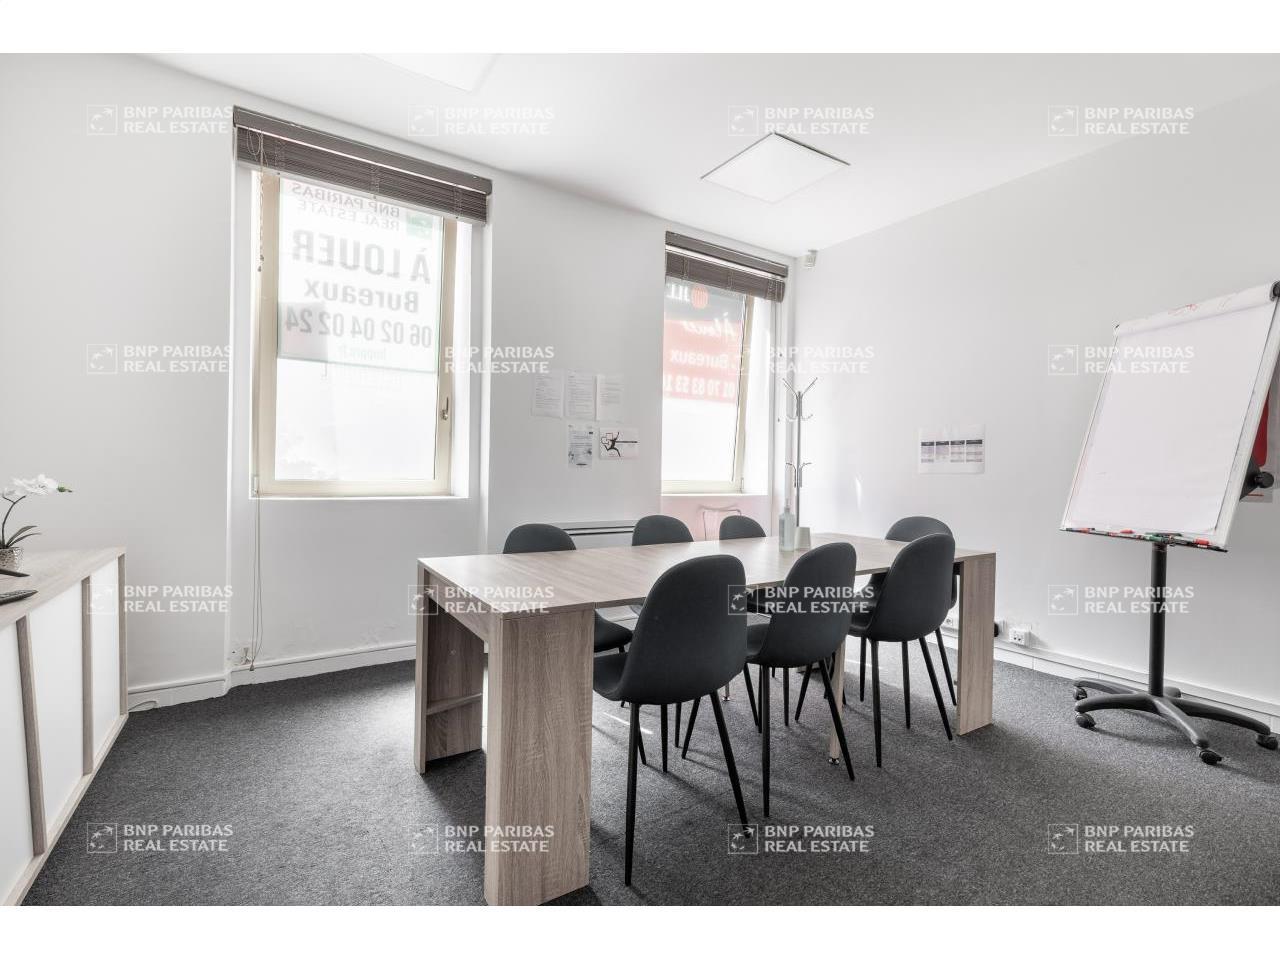 Boulogne-Billancourt bureau 200m² à vendre